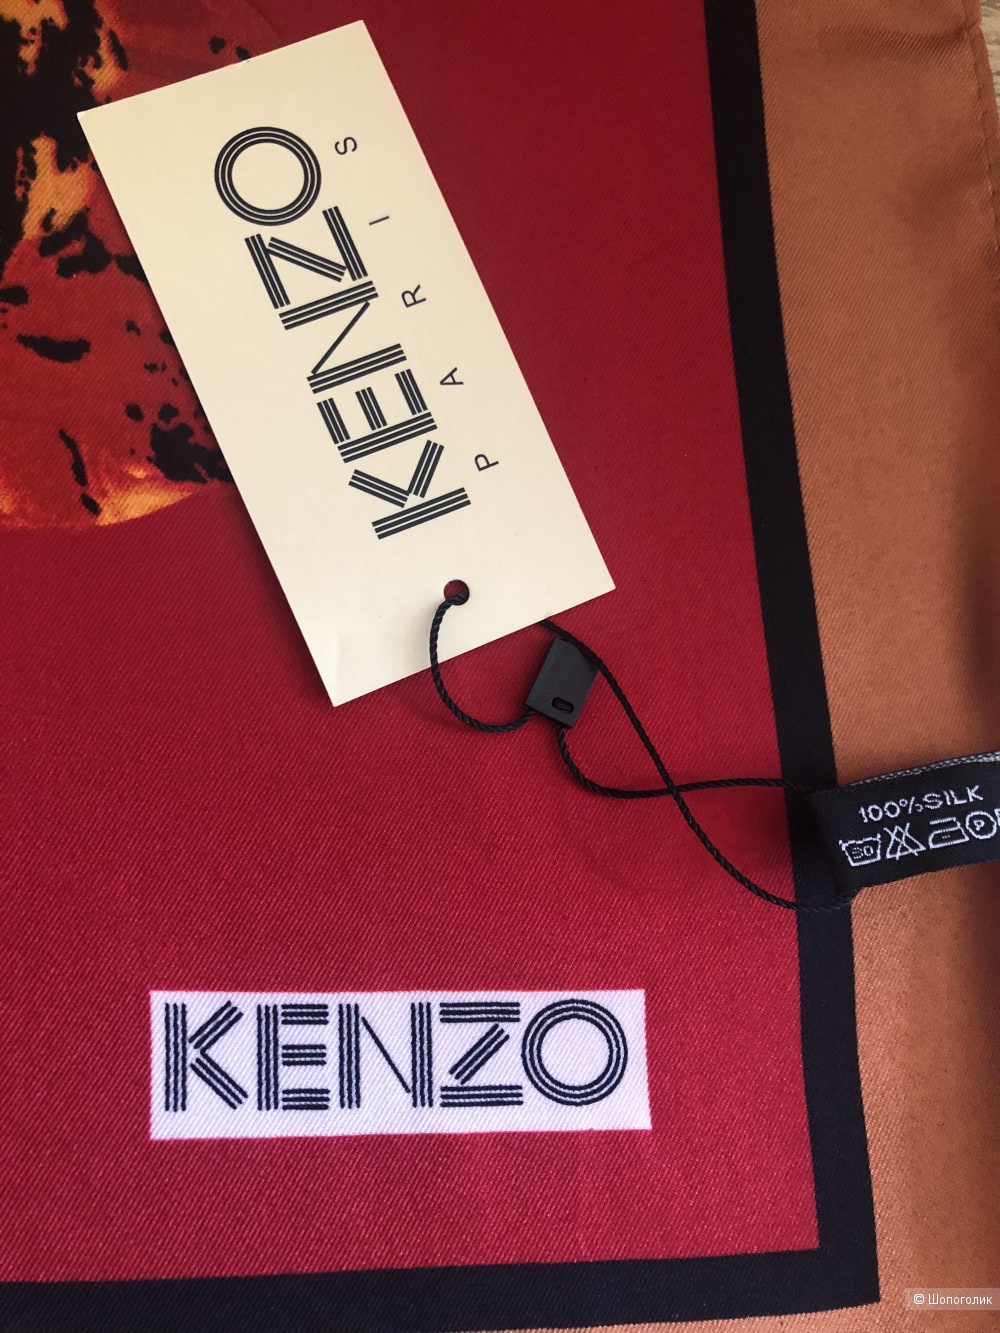 Платок Kenzo, размером 90/90 см